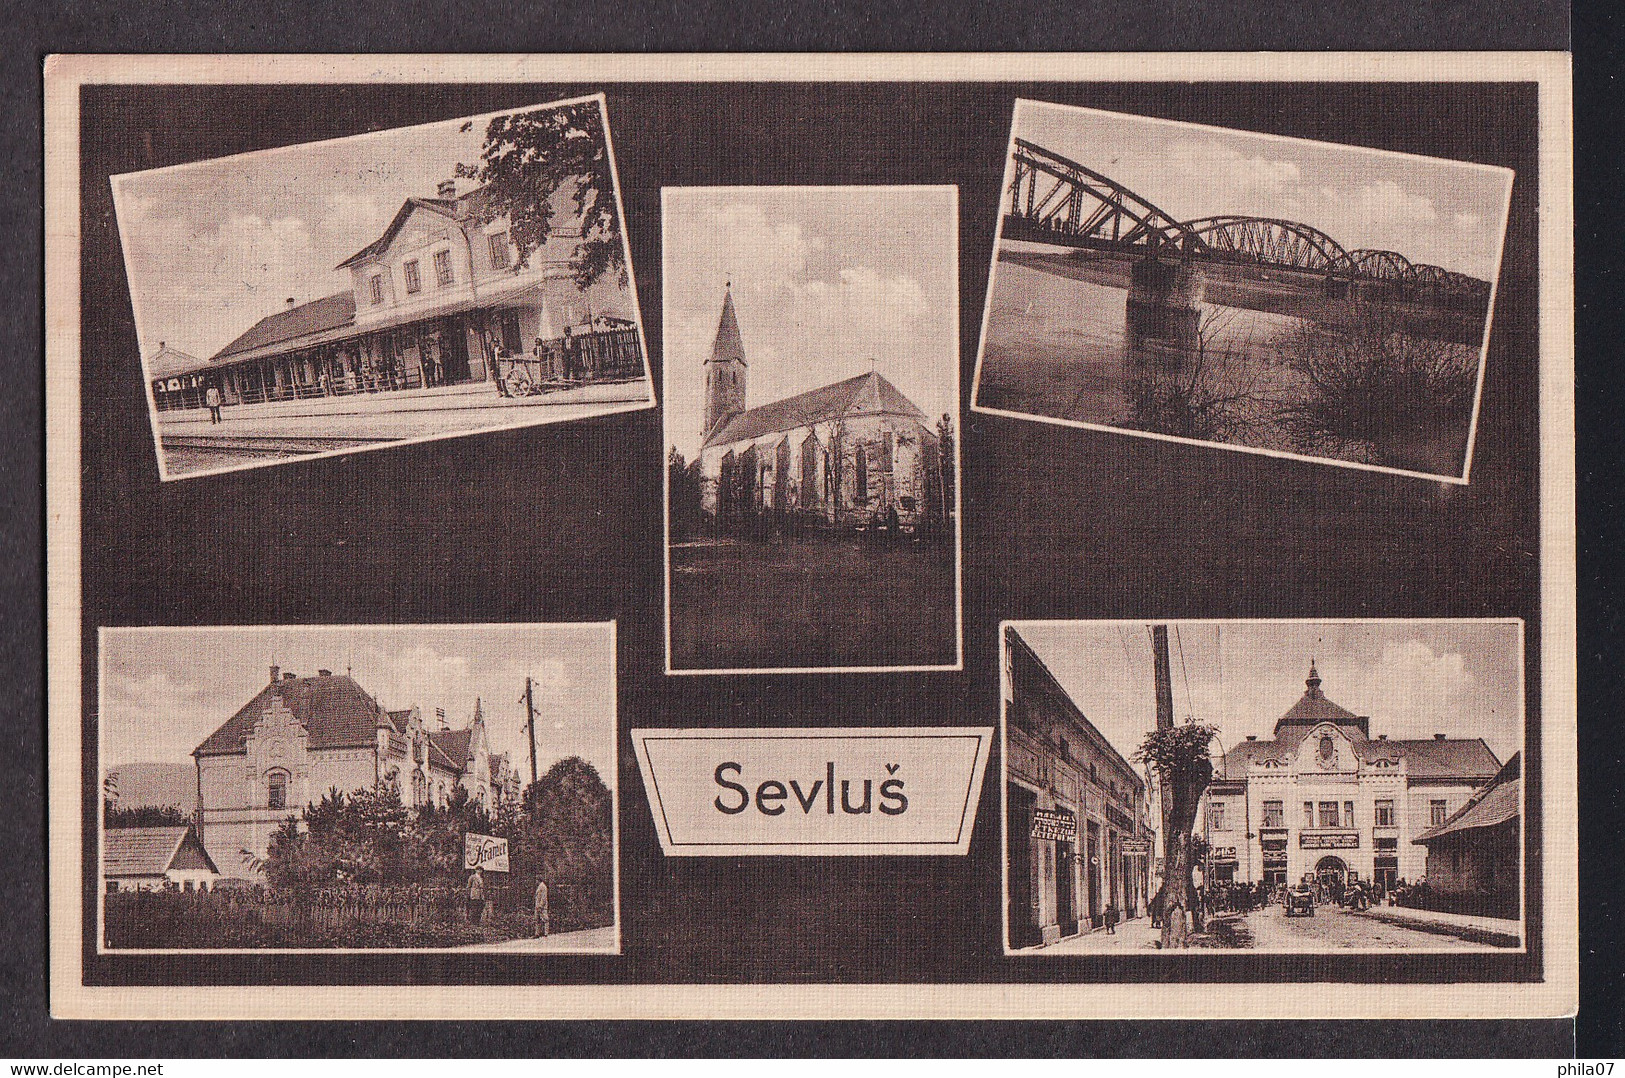 UKRAINE - Sevlus - Sevluš / Postcard Circulated - Ukraine